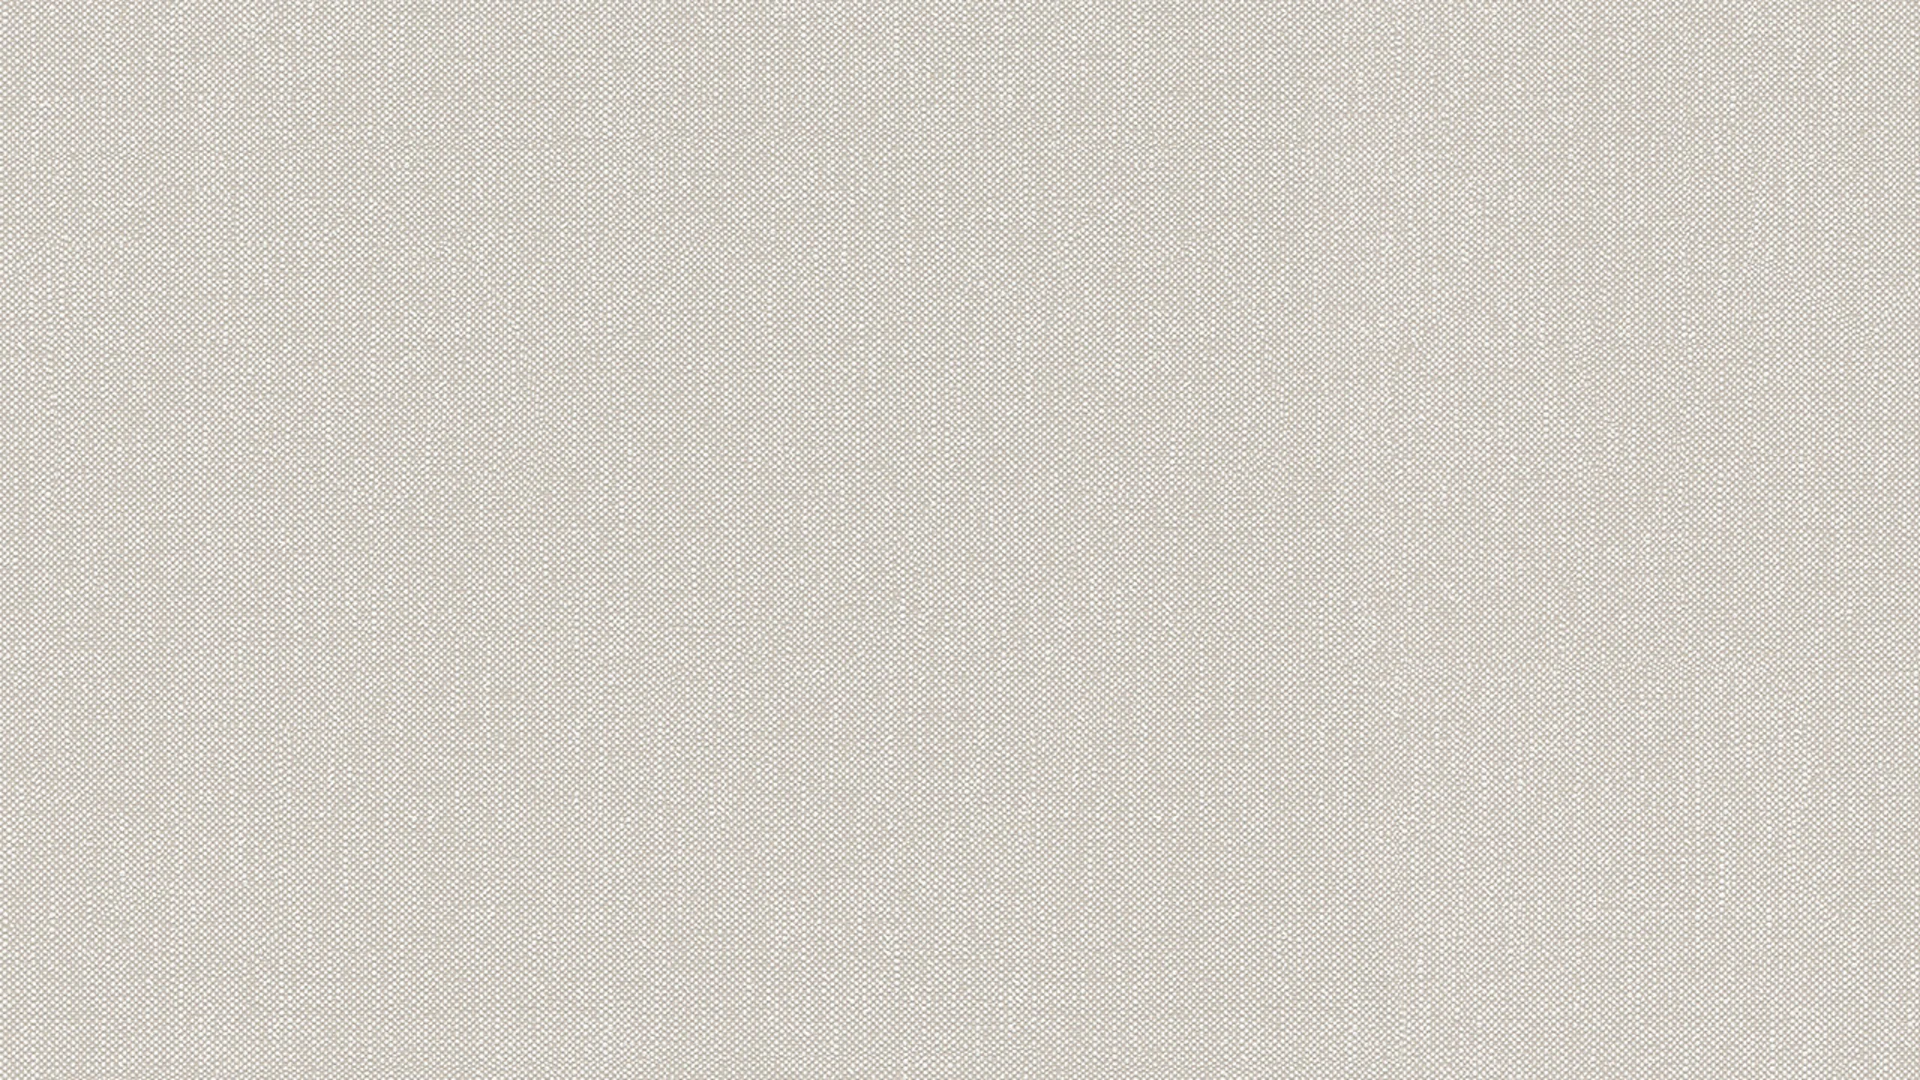 Vinyltapete beige Modern Uni Styleguide Natürlich 2021 287